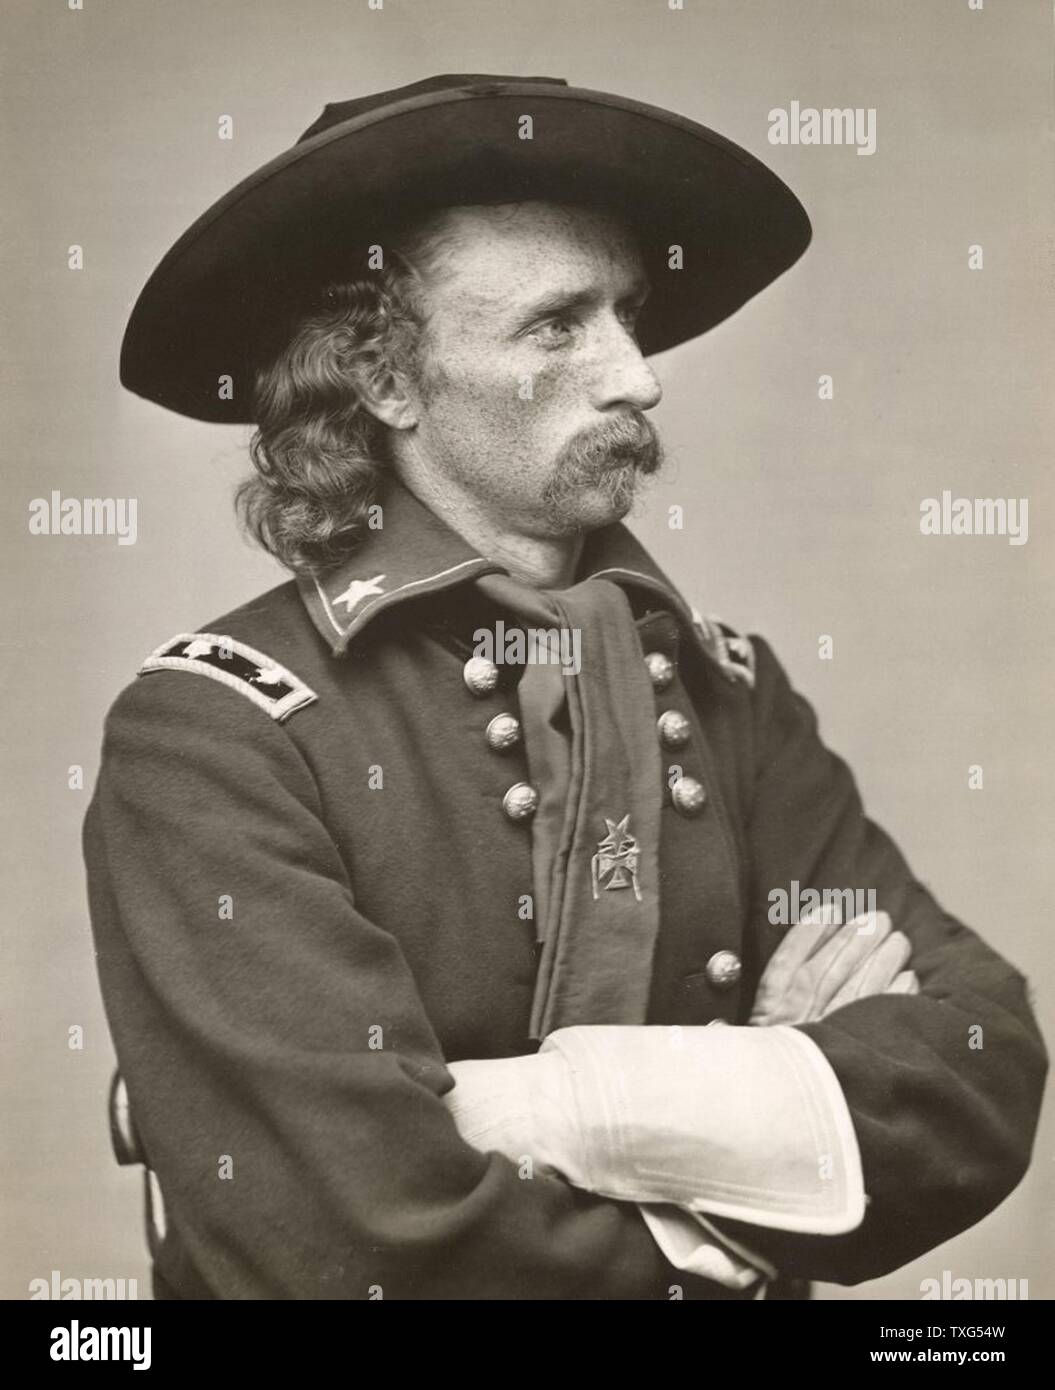 George Armstrong Custer, del ejército los Estados Unidos oficina y comandante de caballería en la Guerra Civil Americana y guerras indias. Derrotado y muerto de Little Big Horn